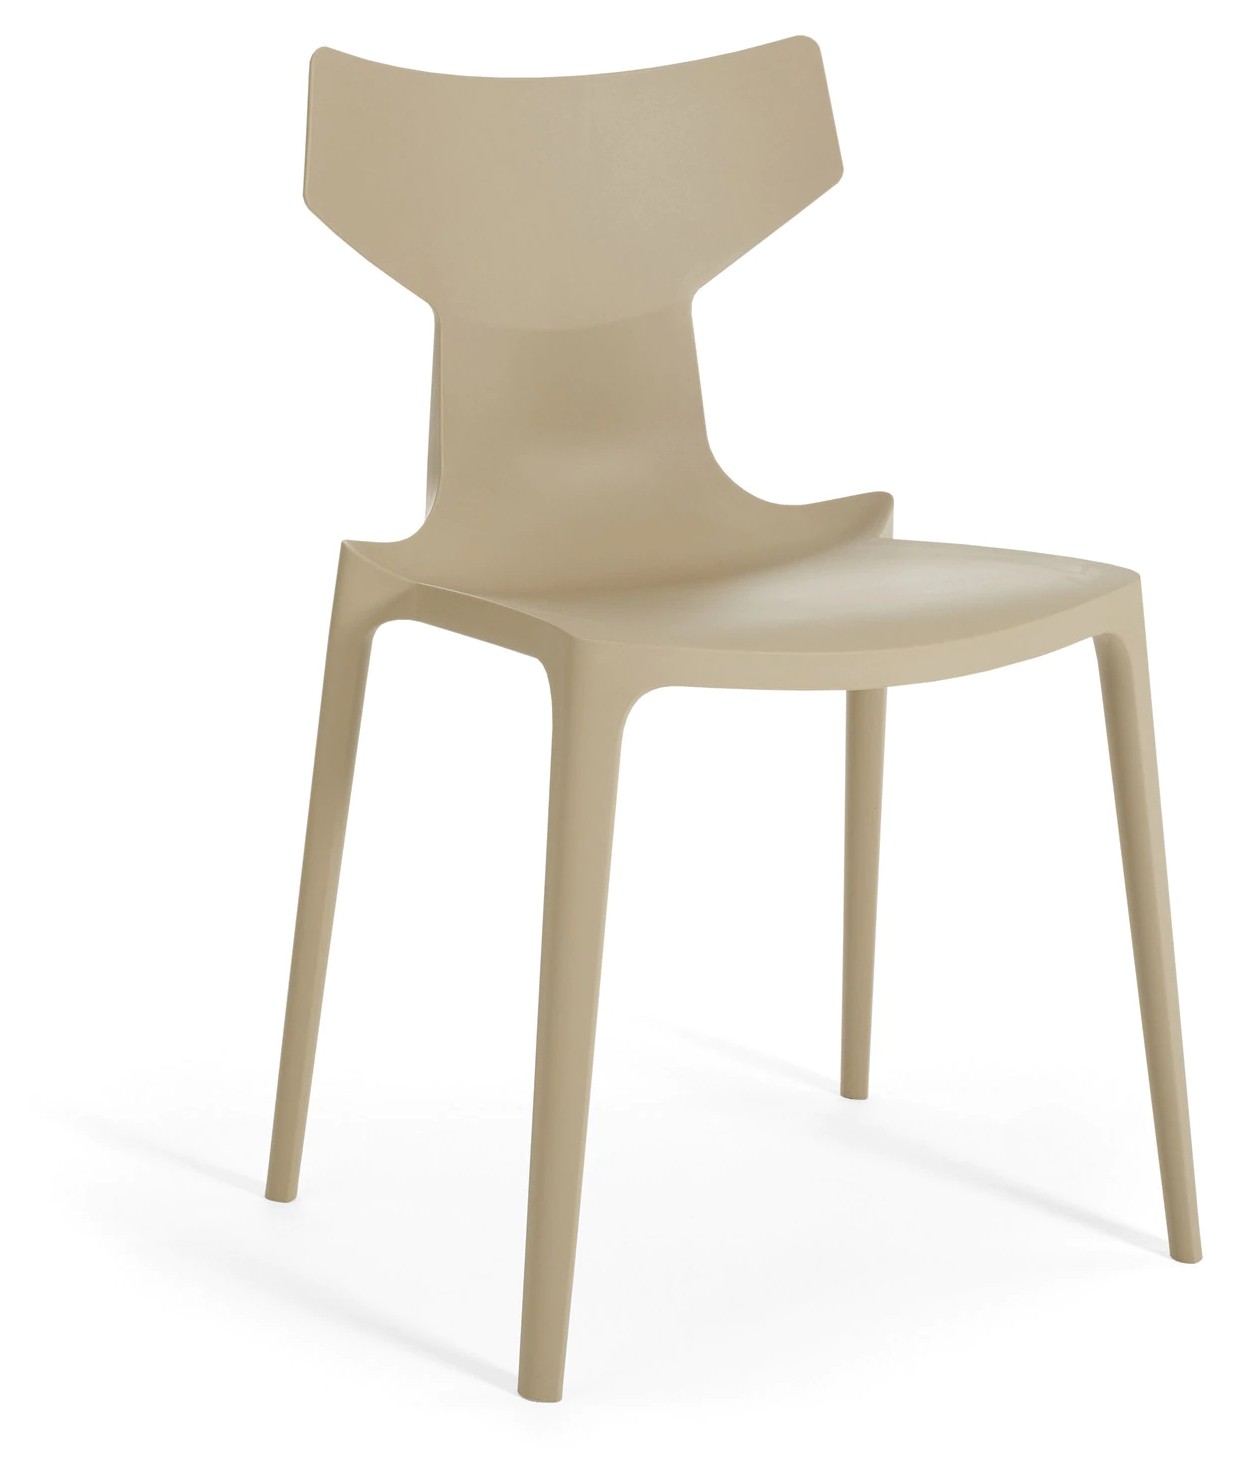 Scaun Kartell Re-Chair design Antonio Citterio gri dove Kartell pret redus imagine 2022